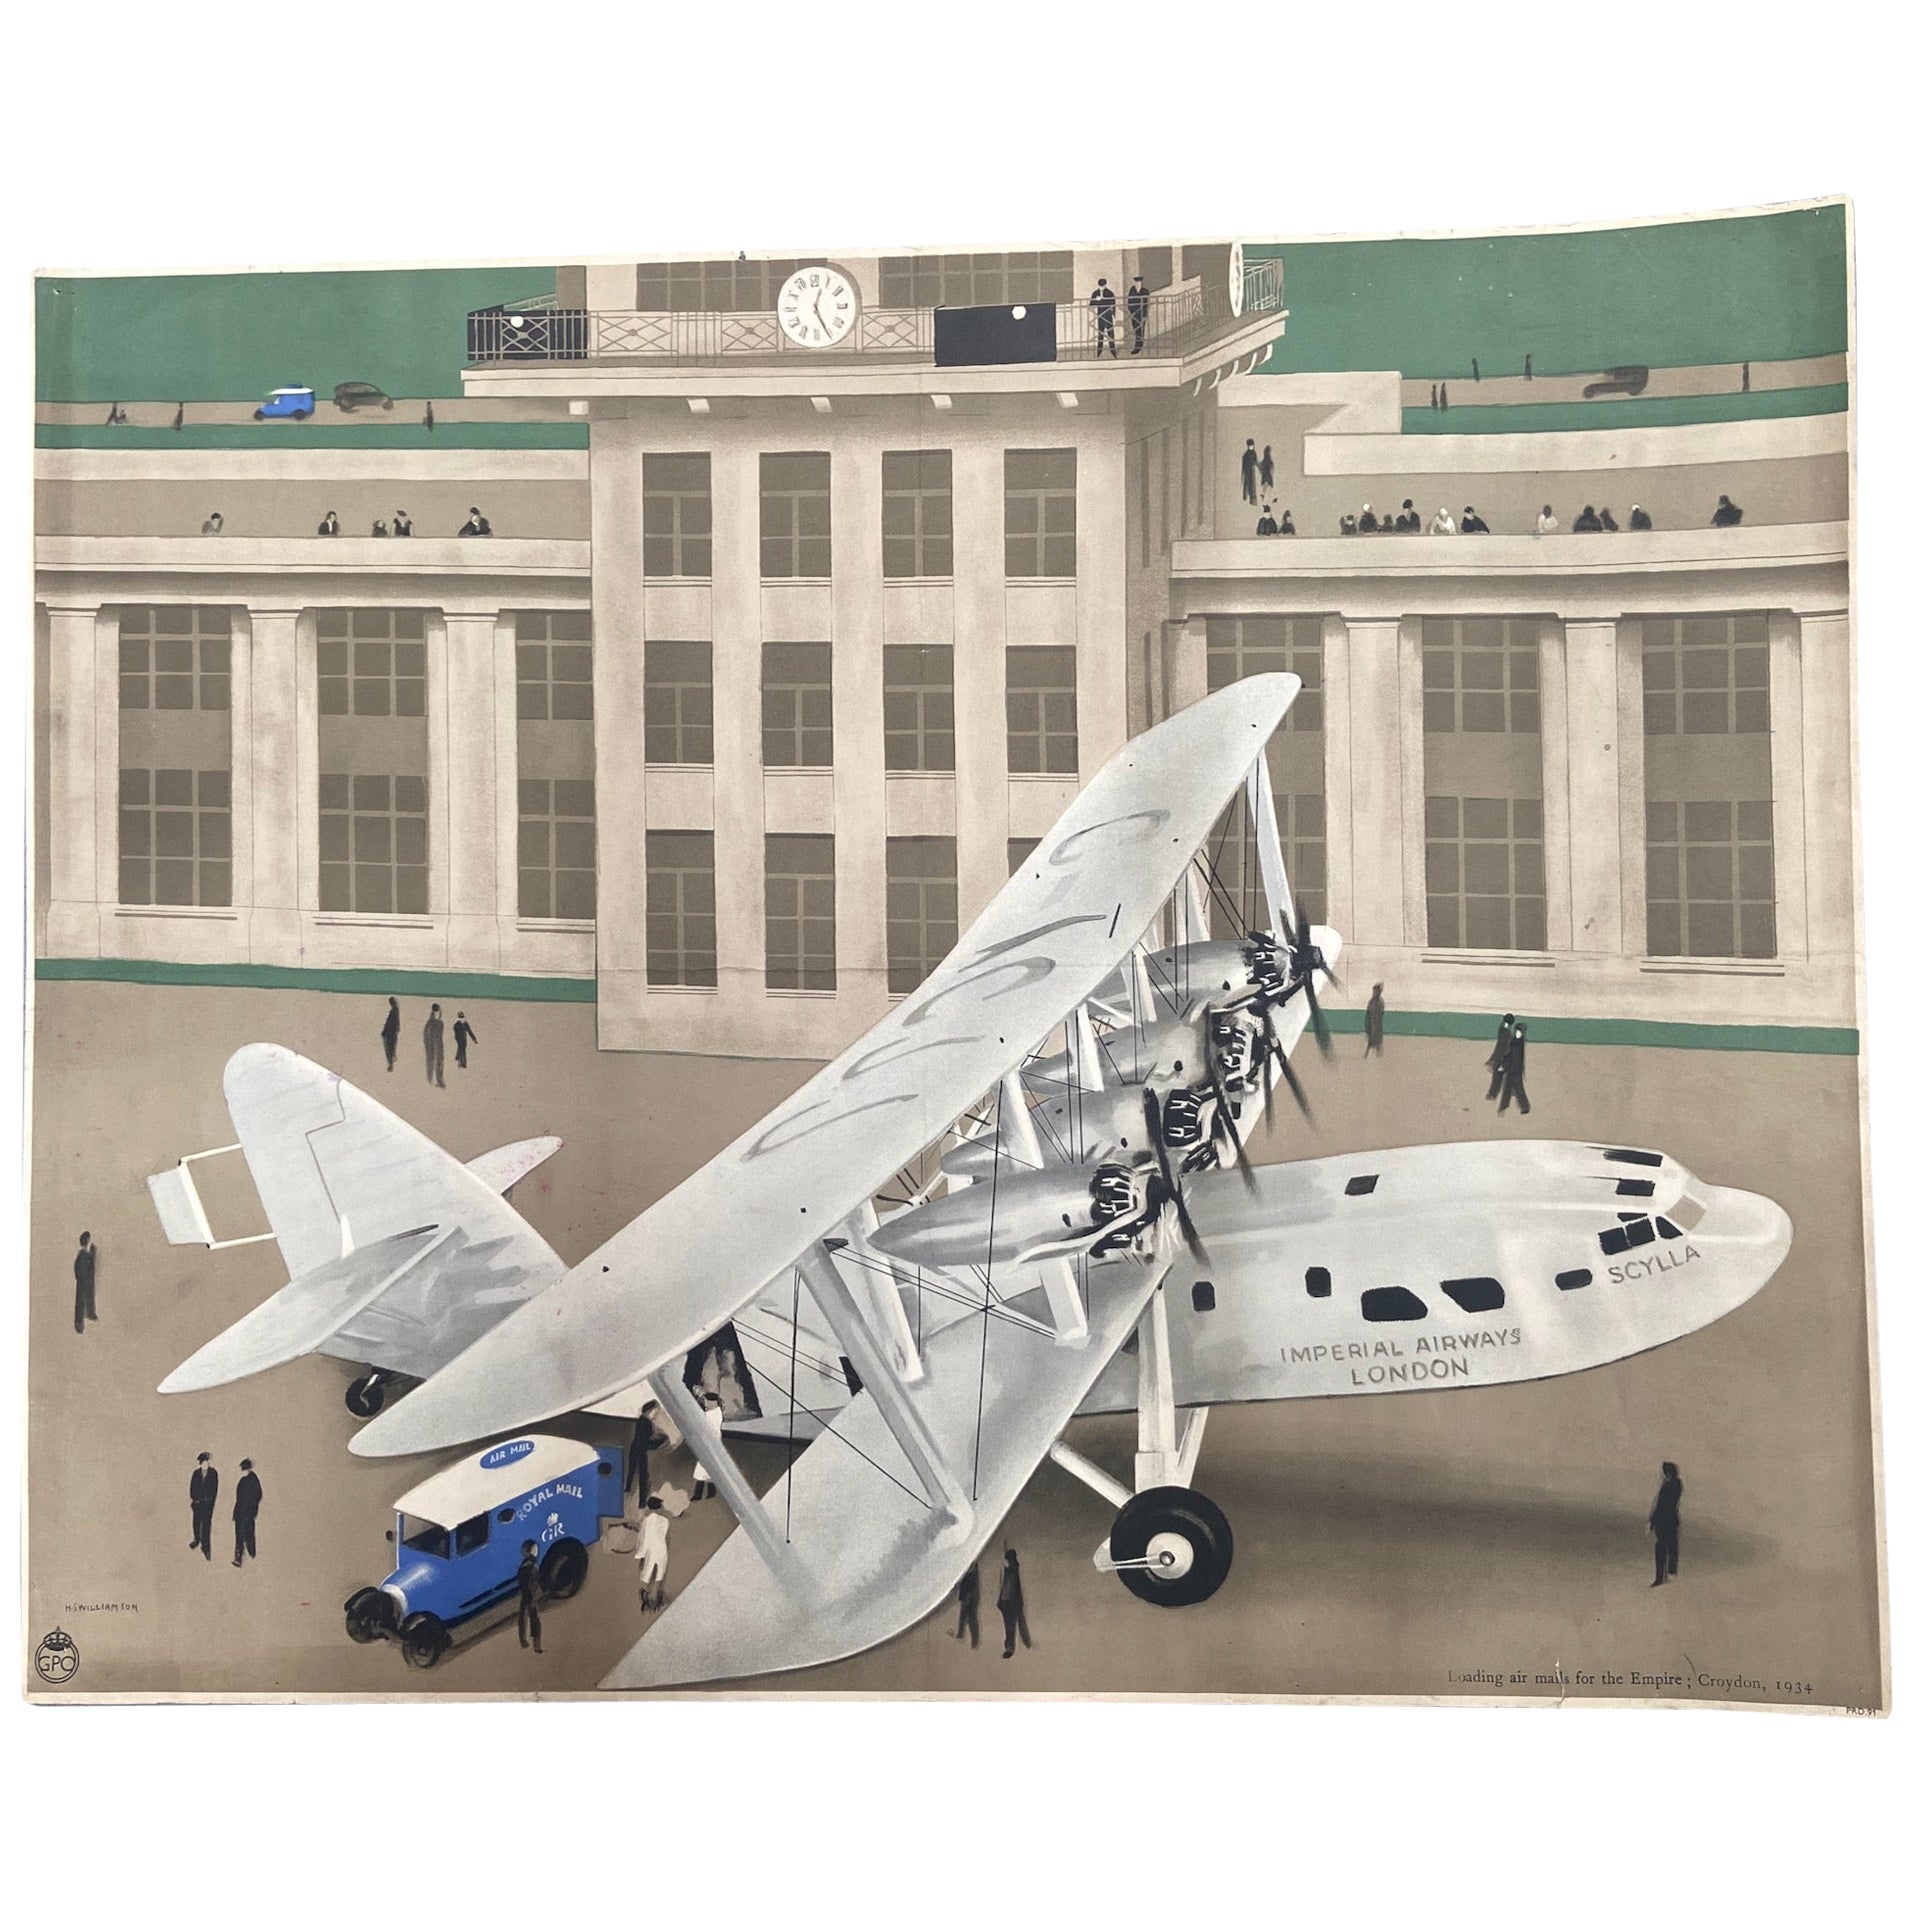 Affiche de la compagnie aérienne impériale GPO de H S Williamson, lithographie couleur originale de 1934